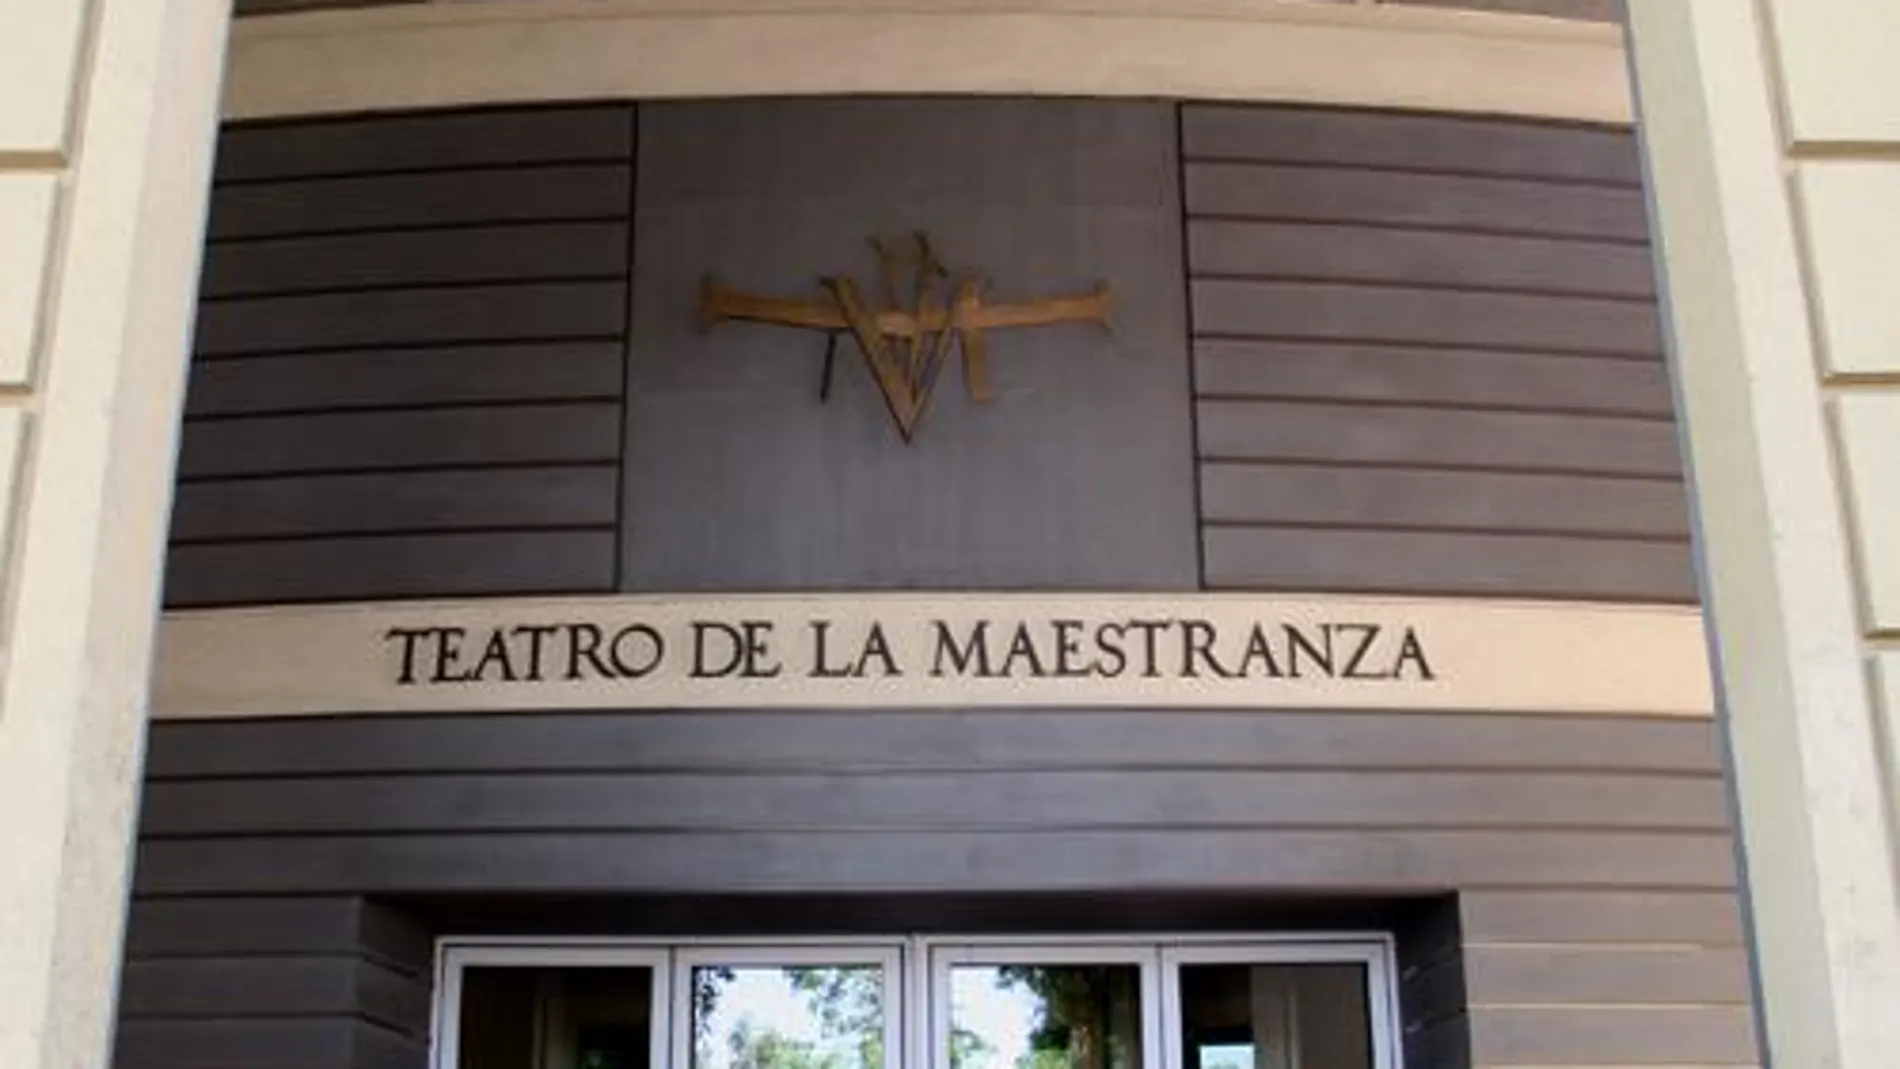 Sevilla.-Coronavirus.- Suspendidas las funciones de la ópera 'El joven barbero de Sevilla' en el Teatro Maestranza